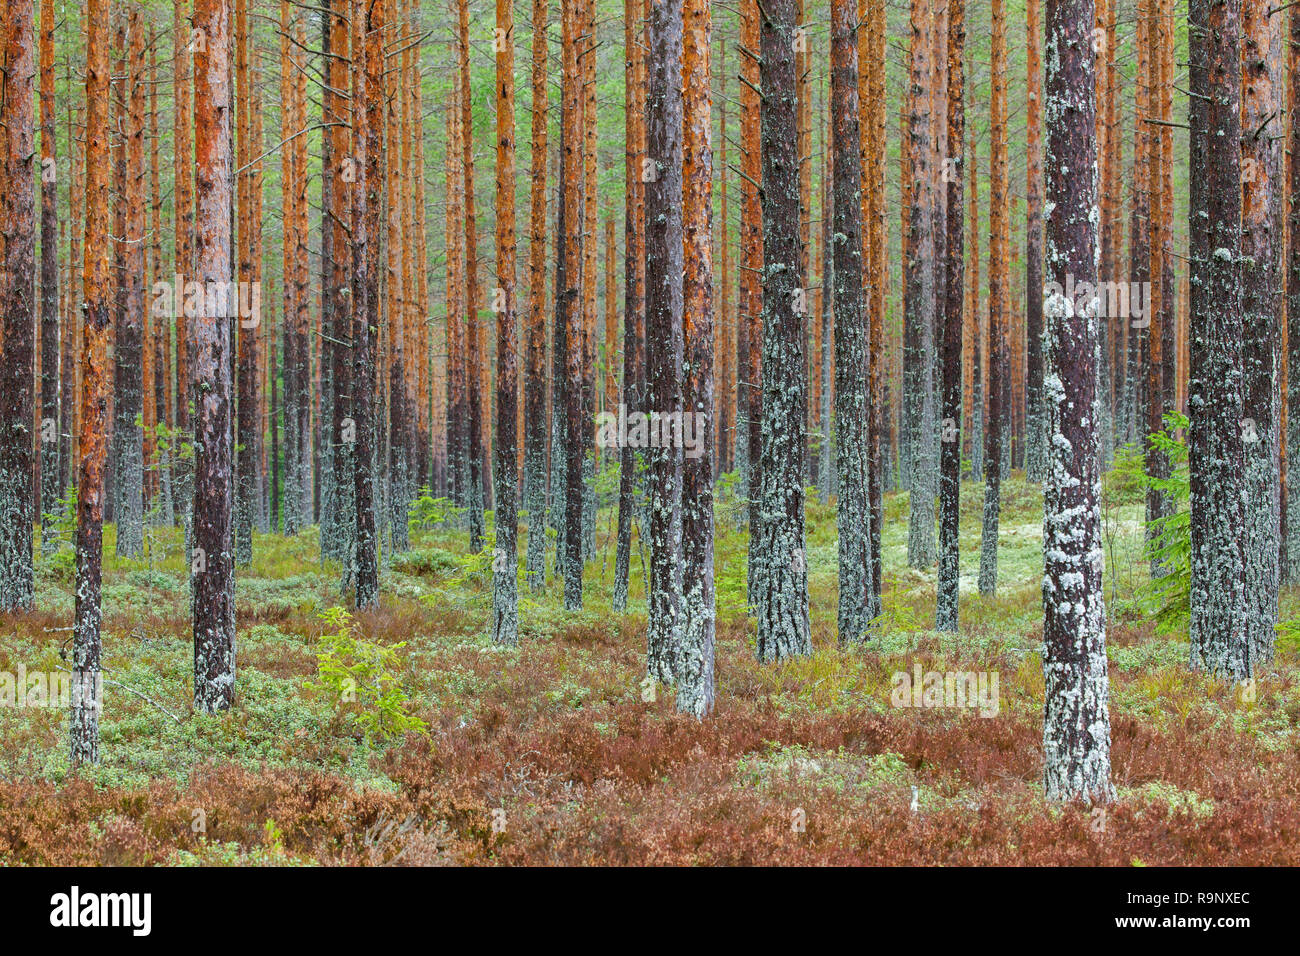 Di Pino silvestre (Pinus sylvestris) tronchi di alberi coperti di muschi e licheni nella foresta di conifere / taiga in Svezia e Scandinavia Foto Stock